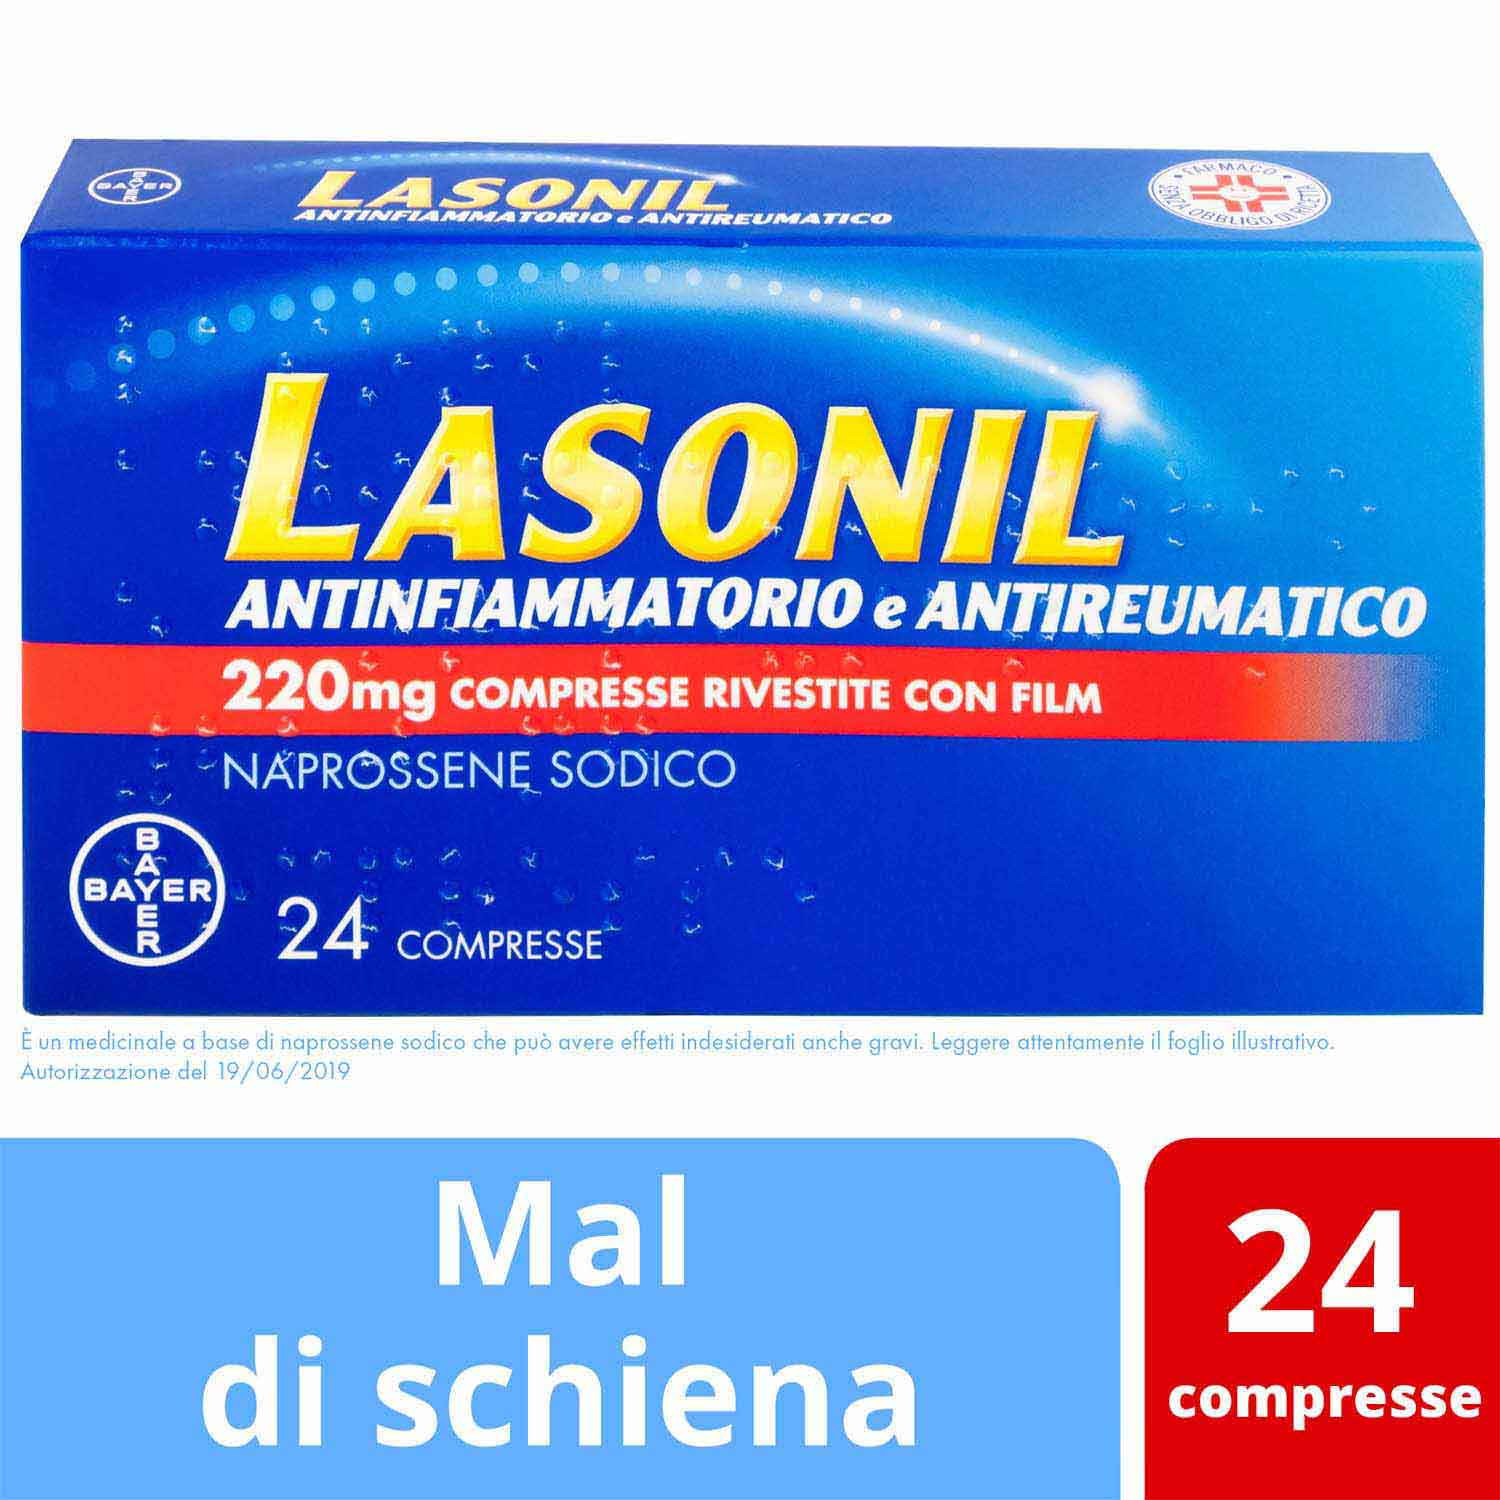 Image of Lasonil Antinfiammatorio e Antireumatico 220mg Naprossene Sodico 24 Compresse